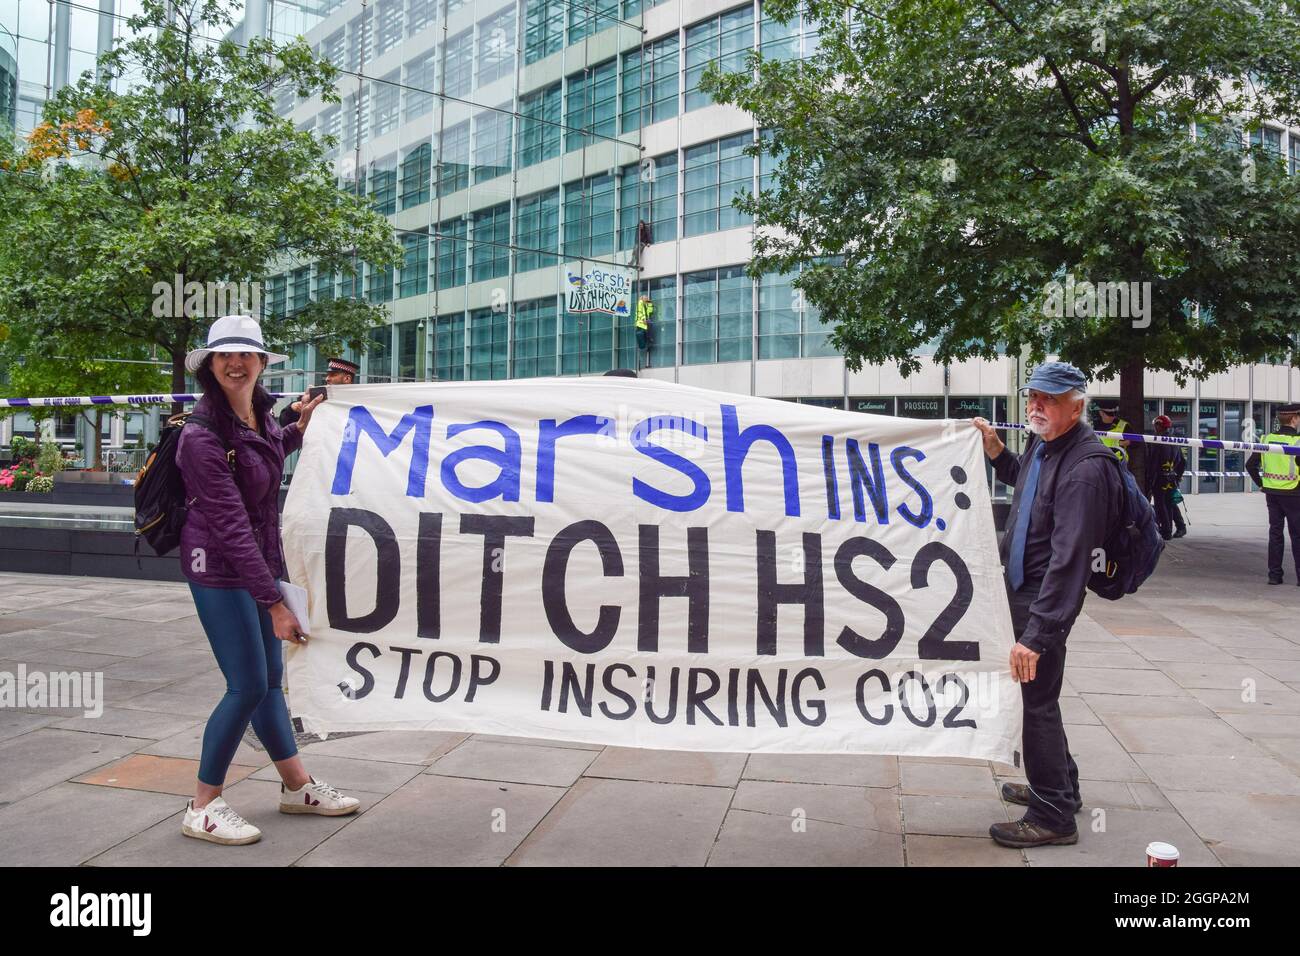 Los manifestantes sostienen una pancarta exigiendo que Marsh Insurance deje de asegurar HS2 durante la manifestación.Dos manifestantes escalaron las oficinas de Marsh Insurance en la ciudad de Londres, exigiendo que dejen de asegurar el sistema ferroviario HS2 (High Speed 2). Foto de stock